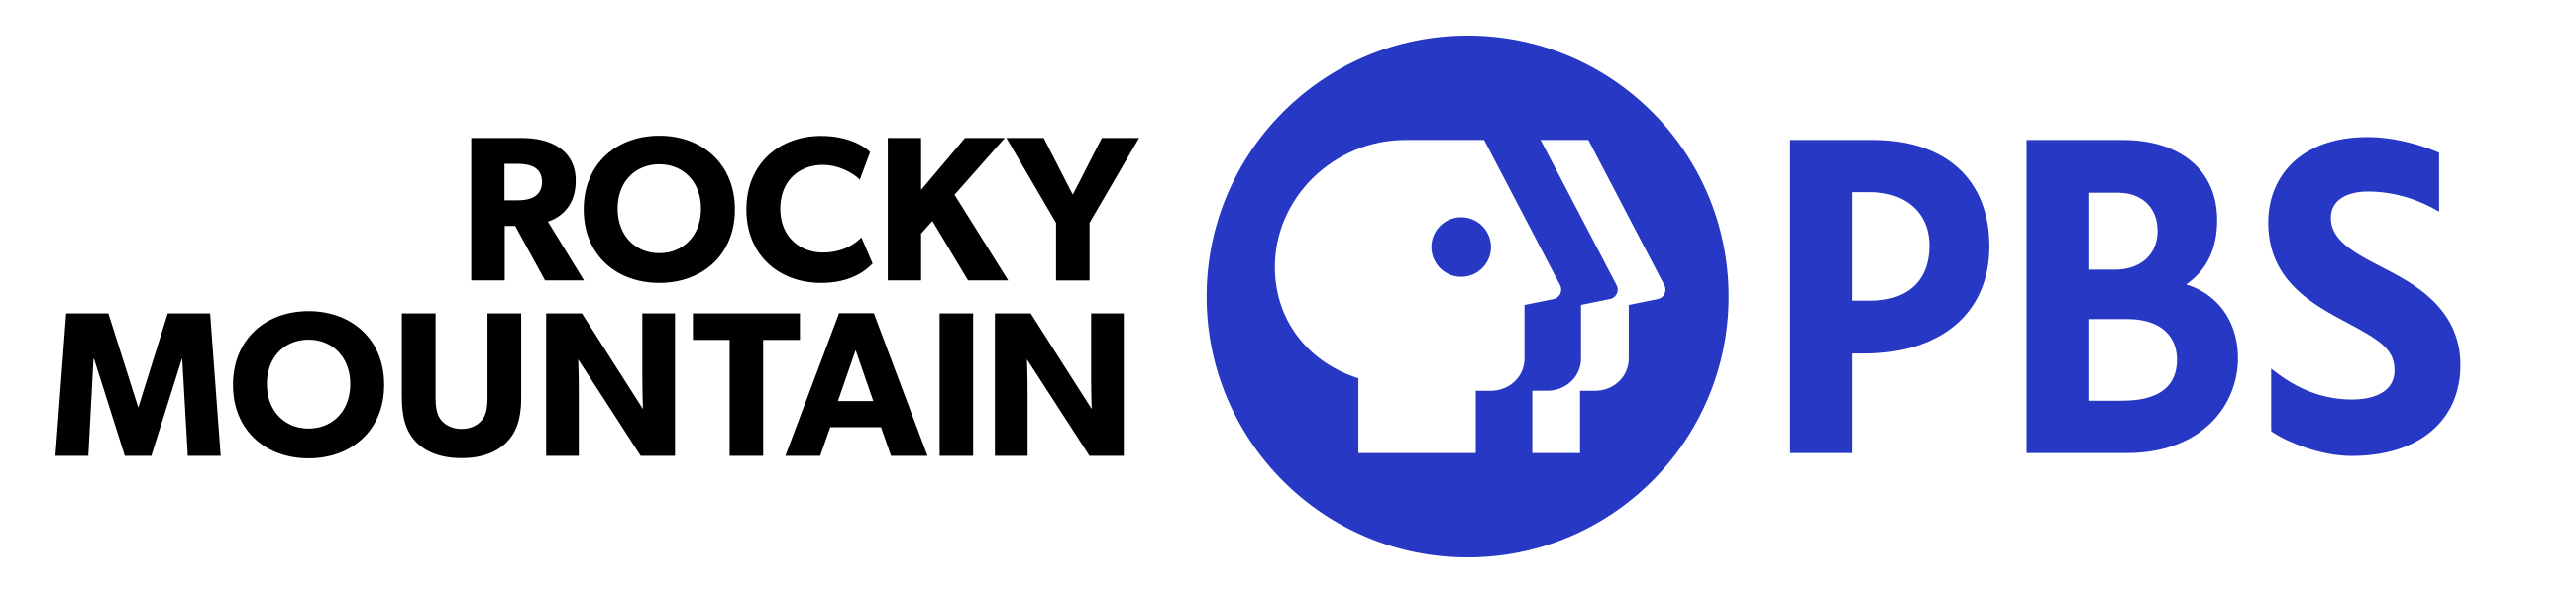 RMPBS logo